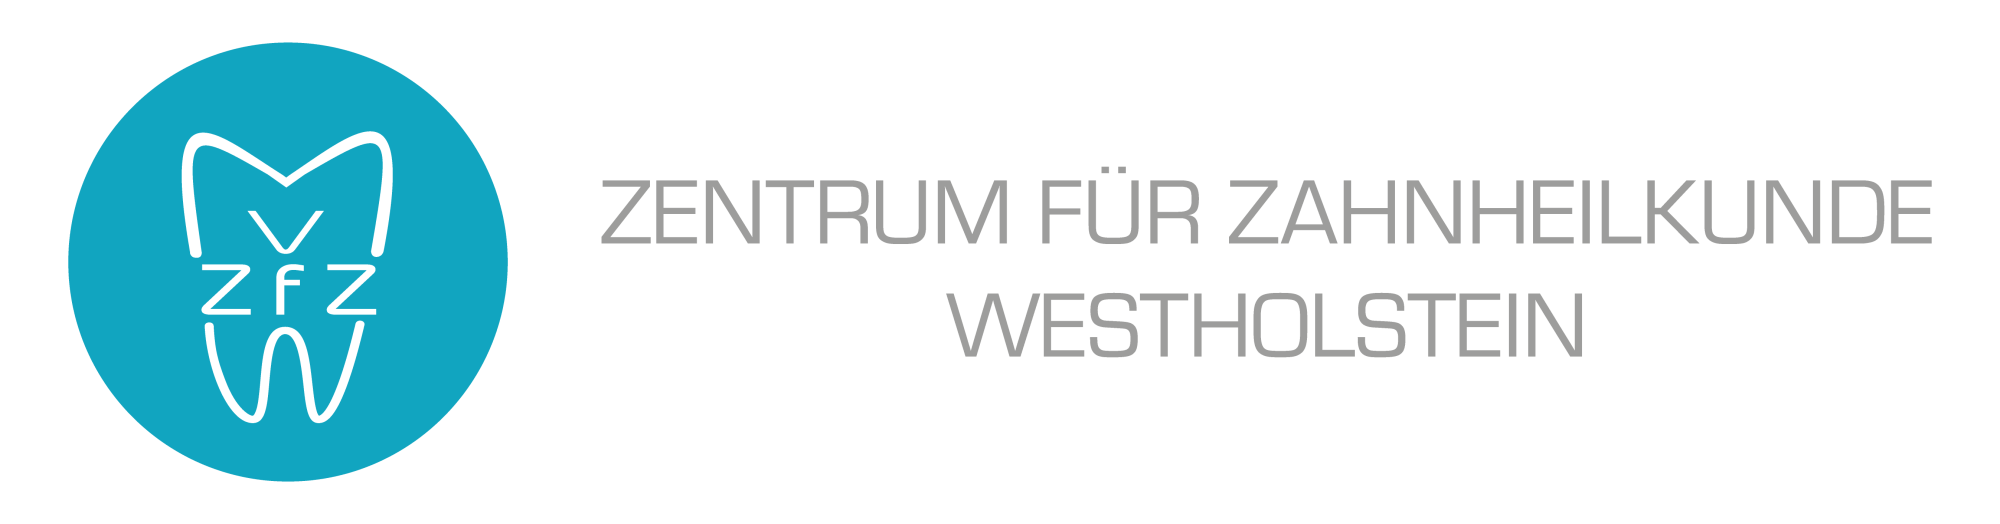 ZFZW-Logo